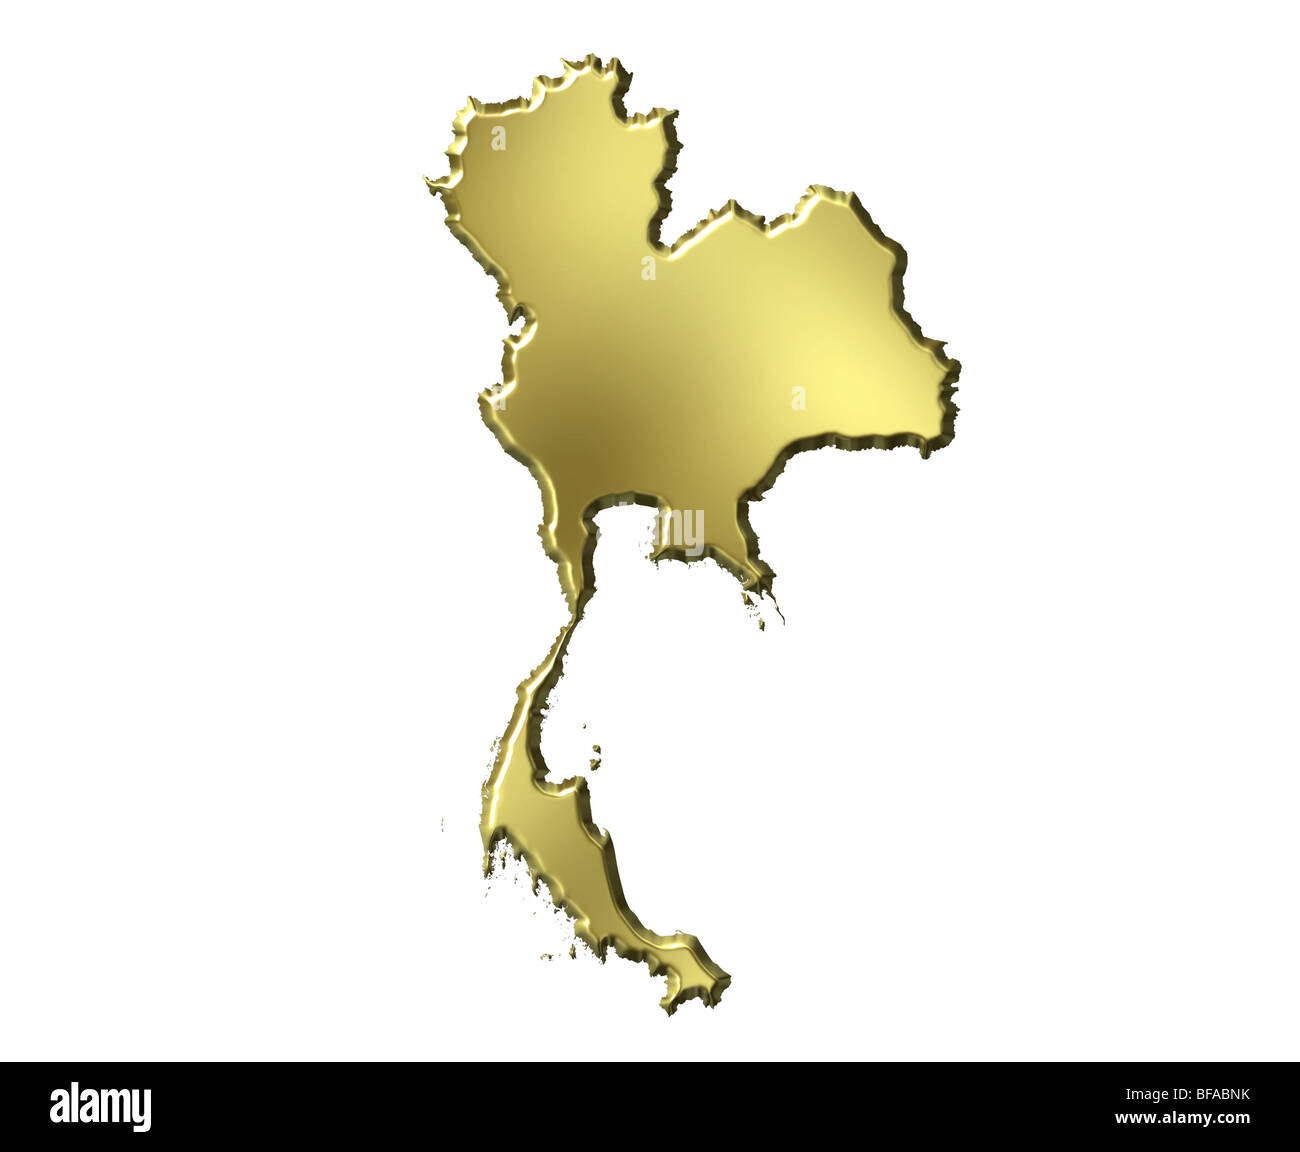 Thailand 3d golden map Stock Photo